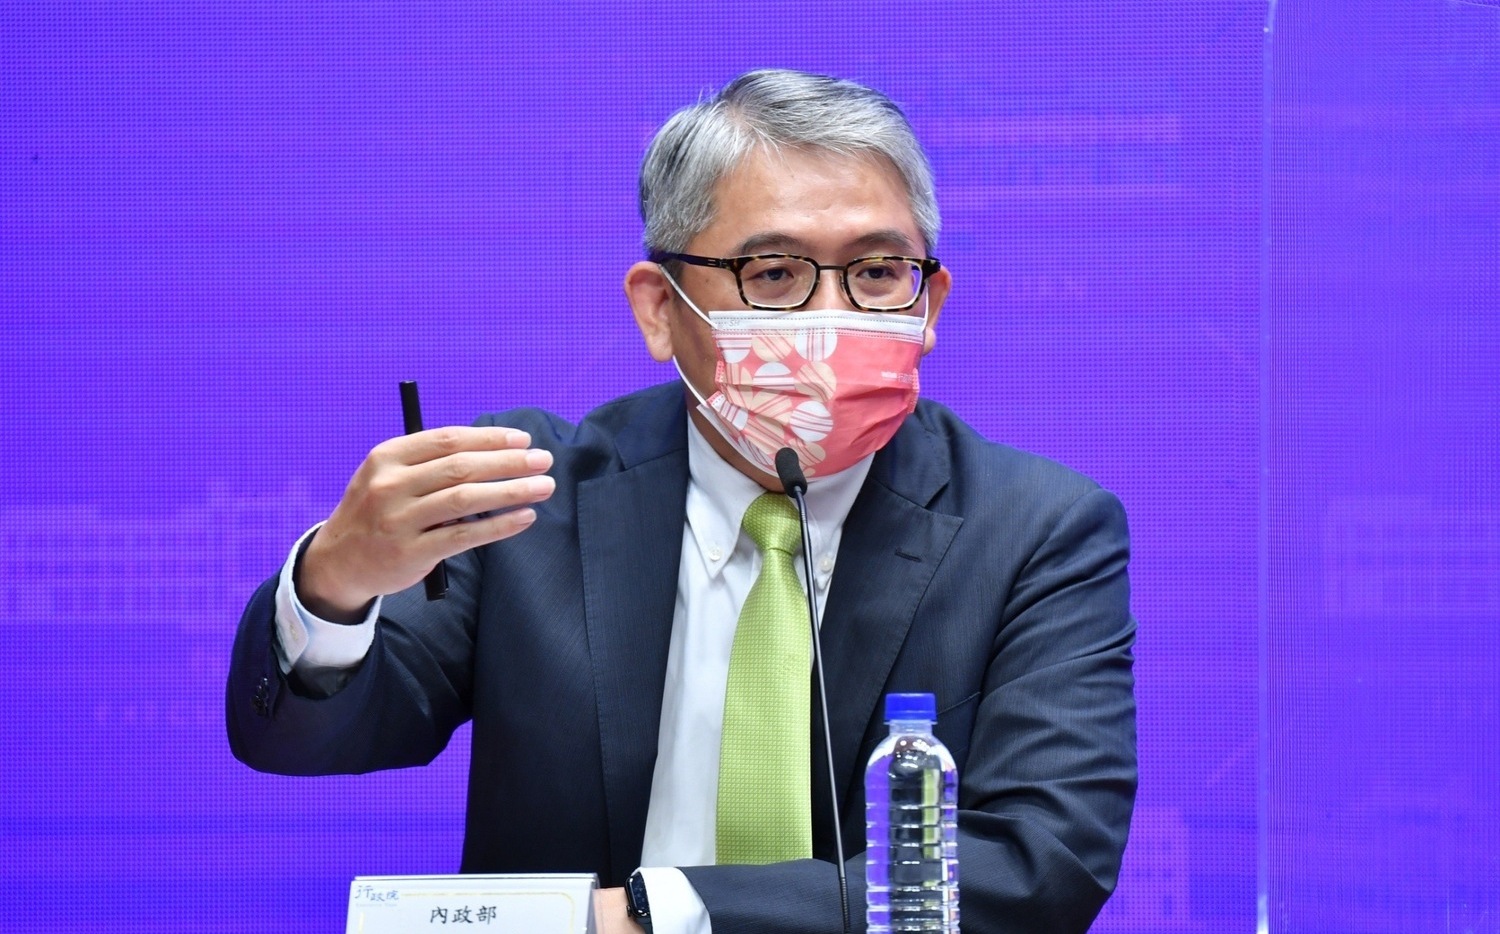 花敬群：台北副市長彭振聲辦公室已接觸 雙方將針對大巨蛋問題進行討論 |